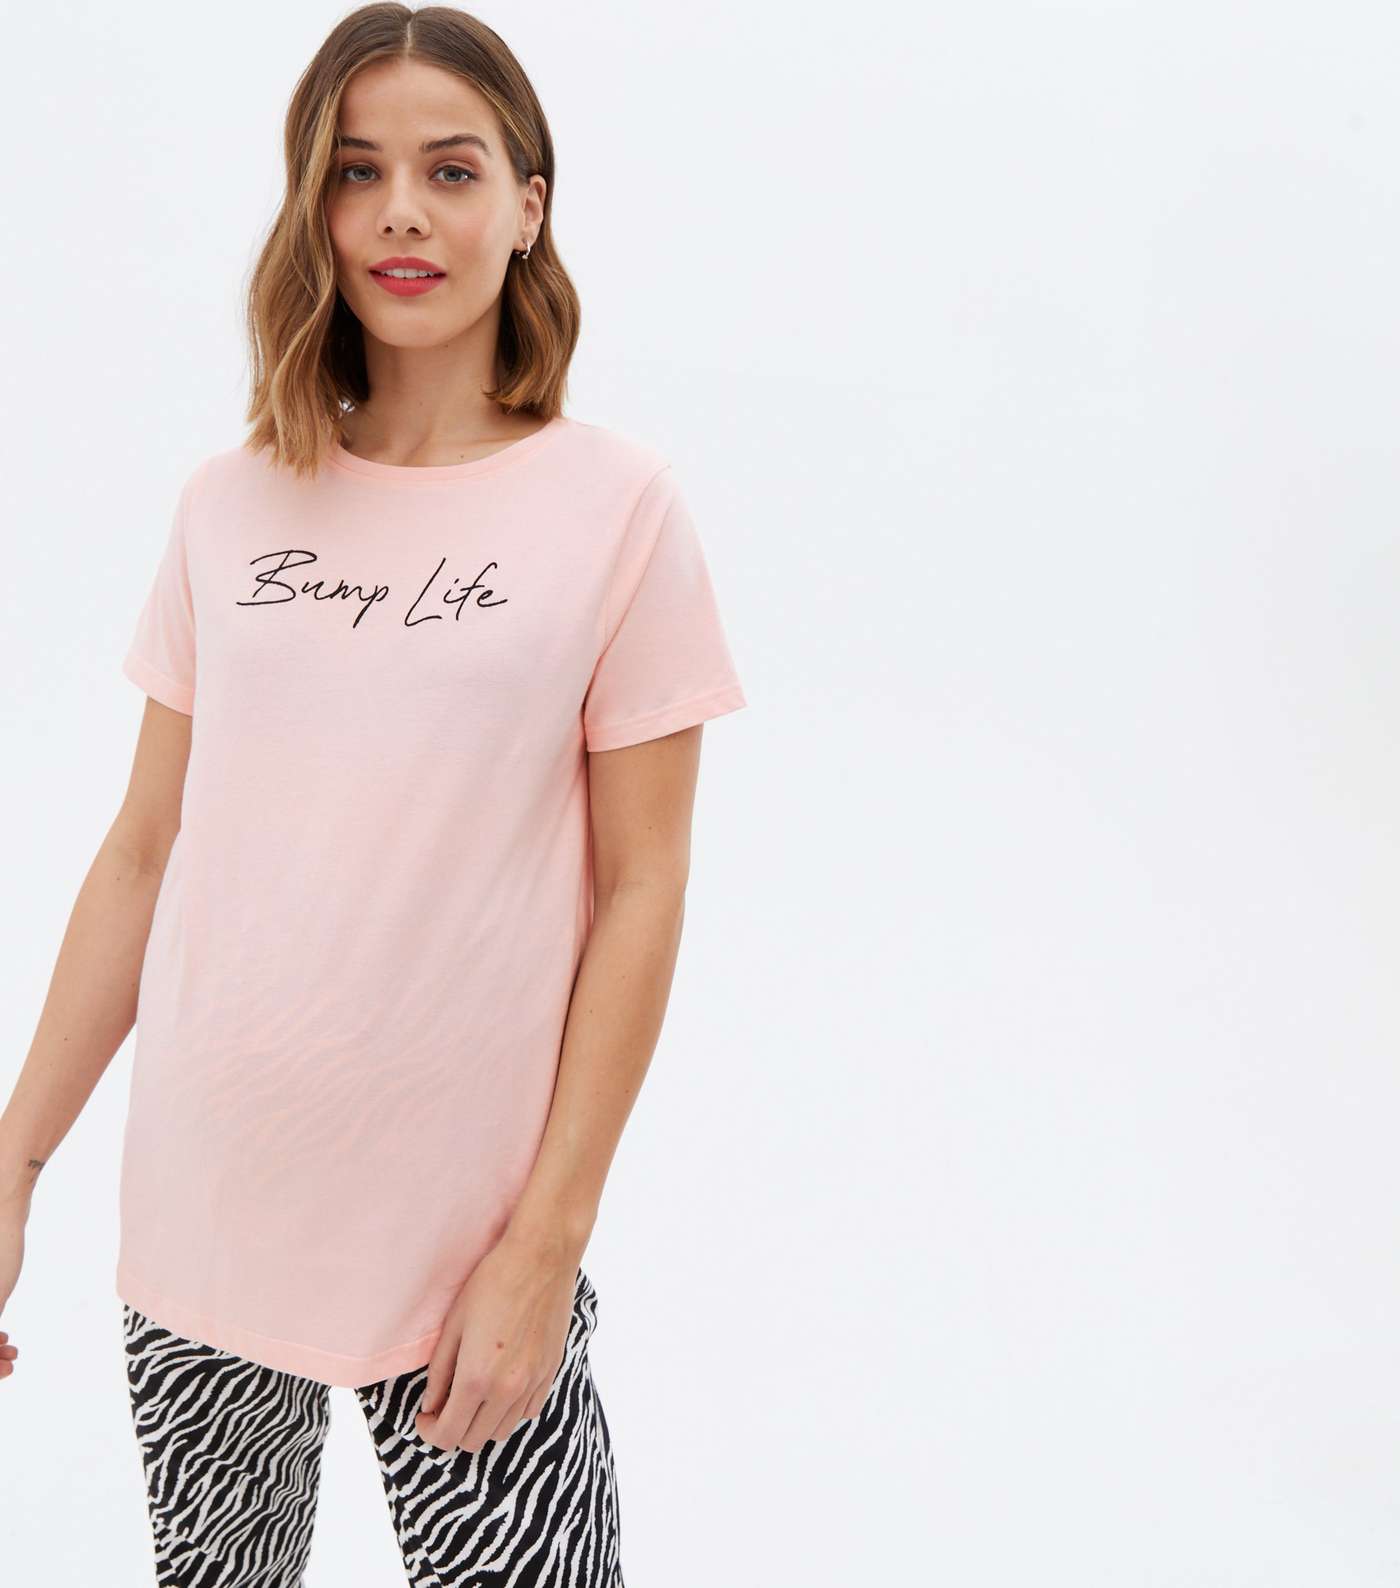 Maternity Pink Jogger Pyjama Set with Bump Life Logo Image 2